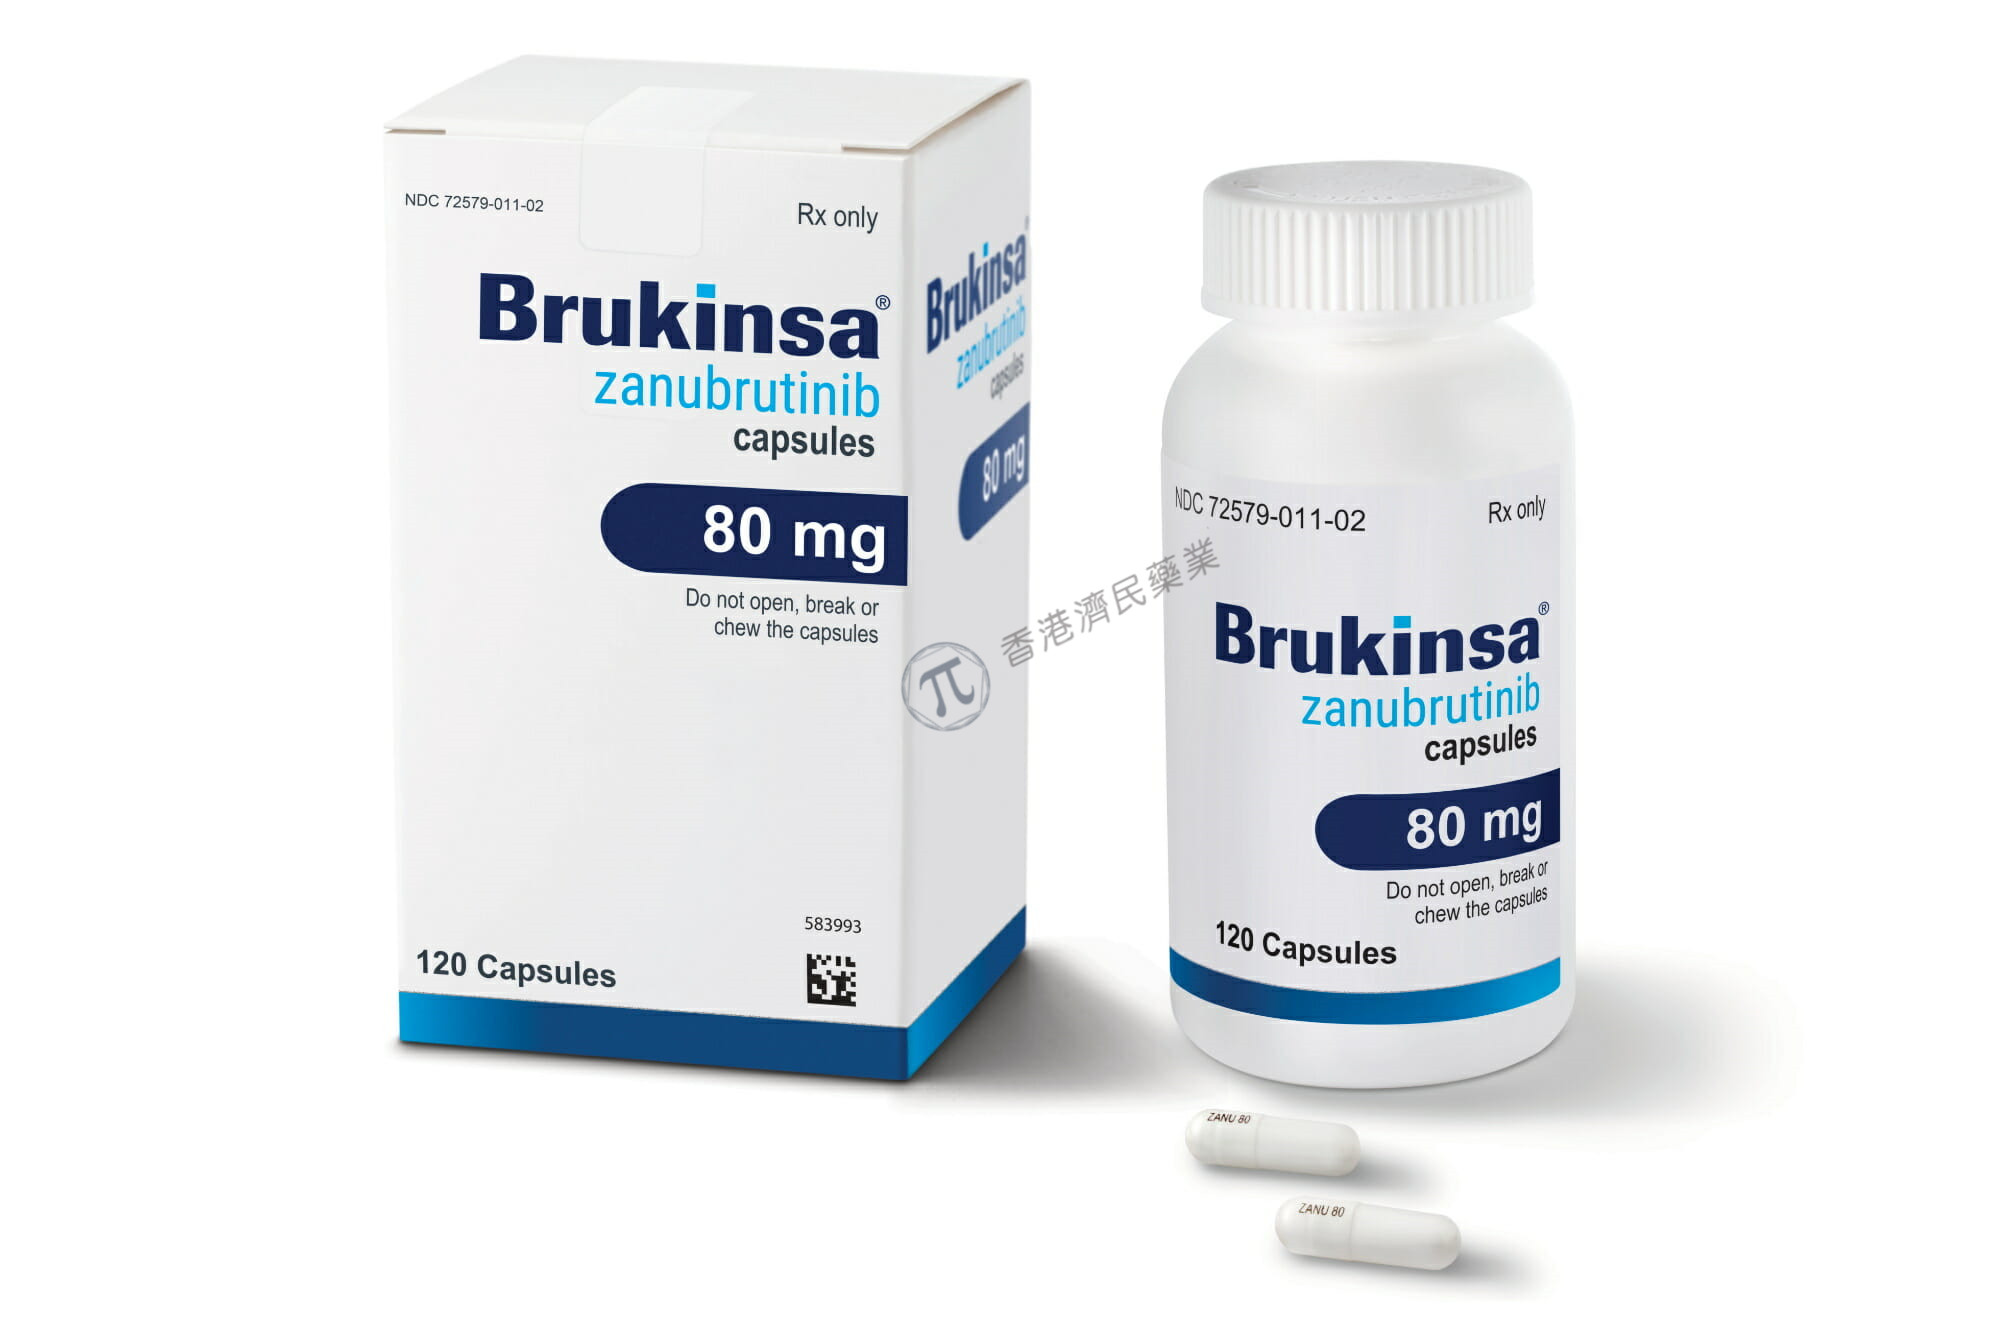 Brukinsa美国标签更新：纳入了复发或难治性CLL的无进展生存期数据_香港济民药业